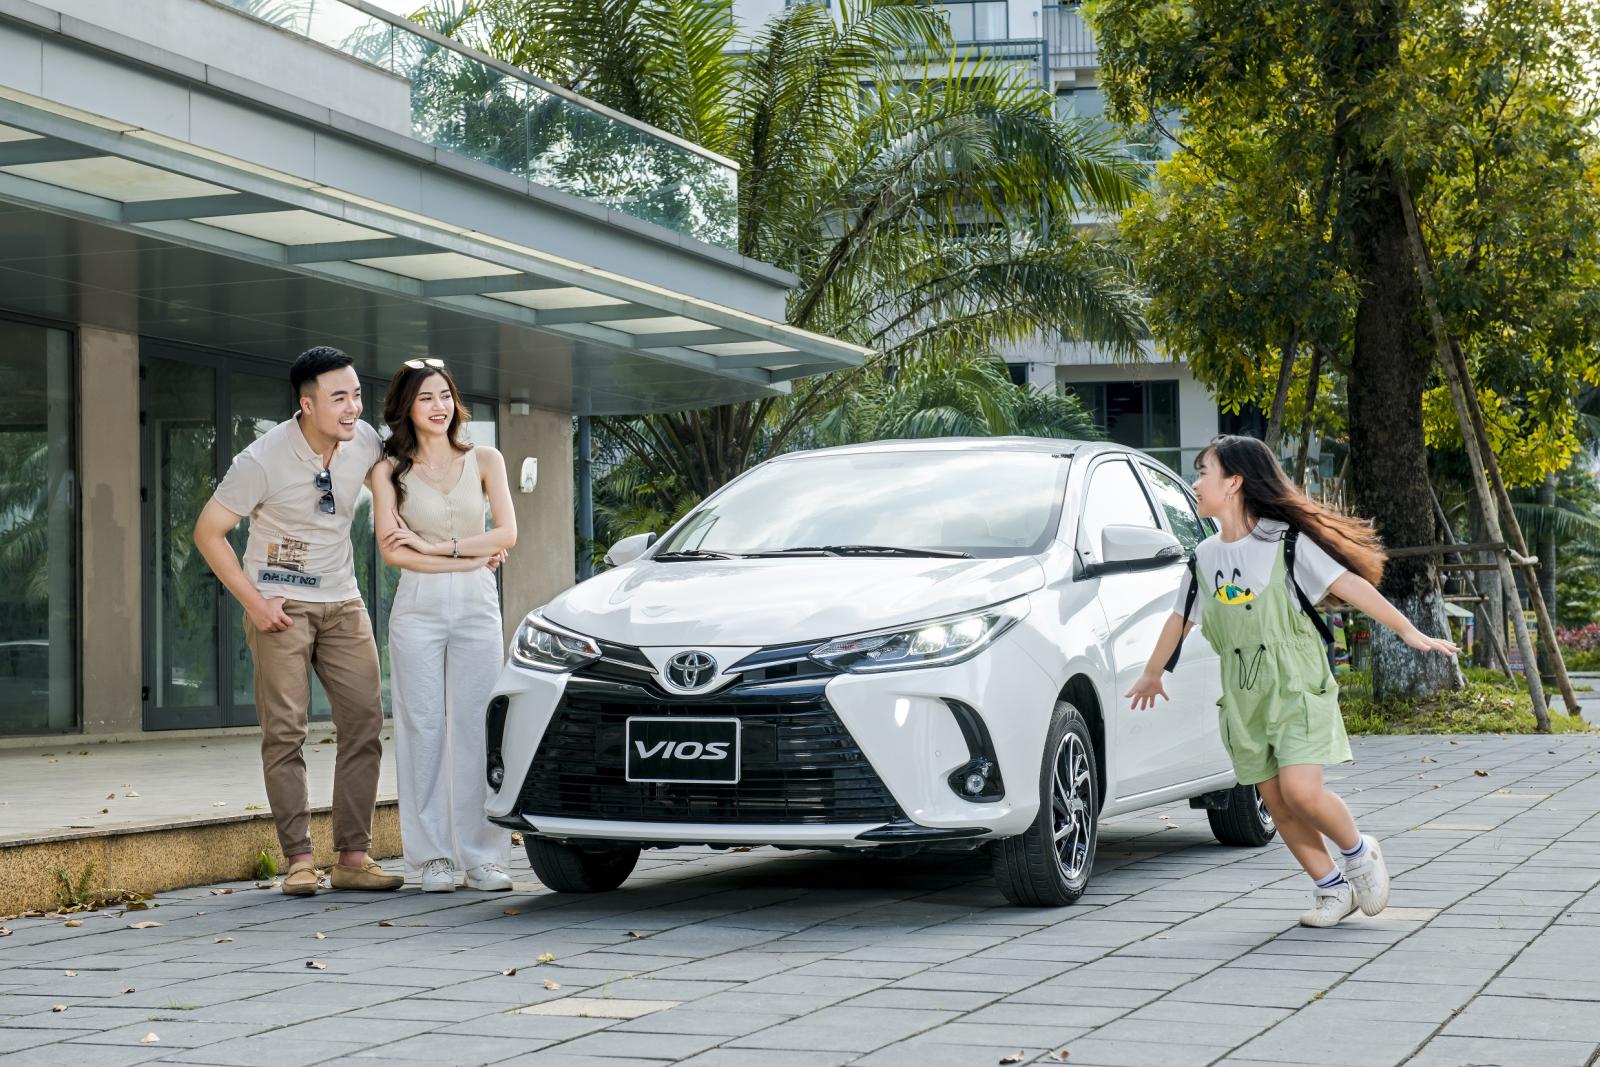 Toyota Vios ưu đãi lên đến 26,5 triệu đồng với chương trình “An tâm ở nhà, nhận quà ưu đãi” 1